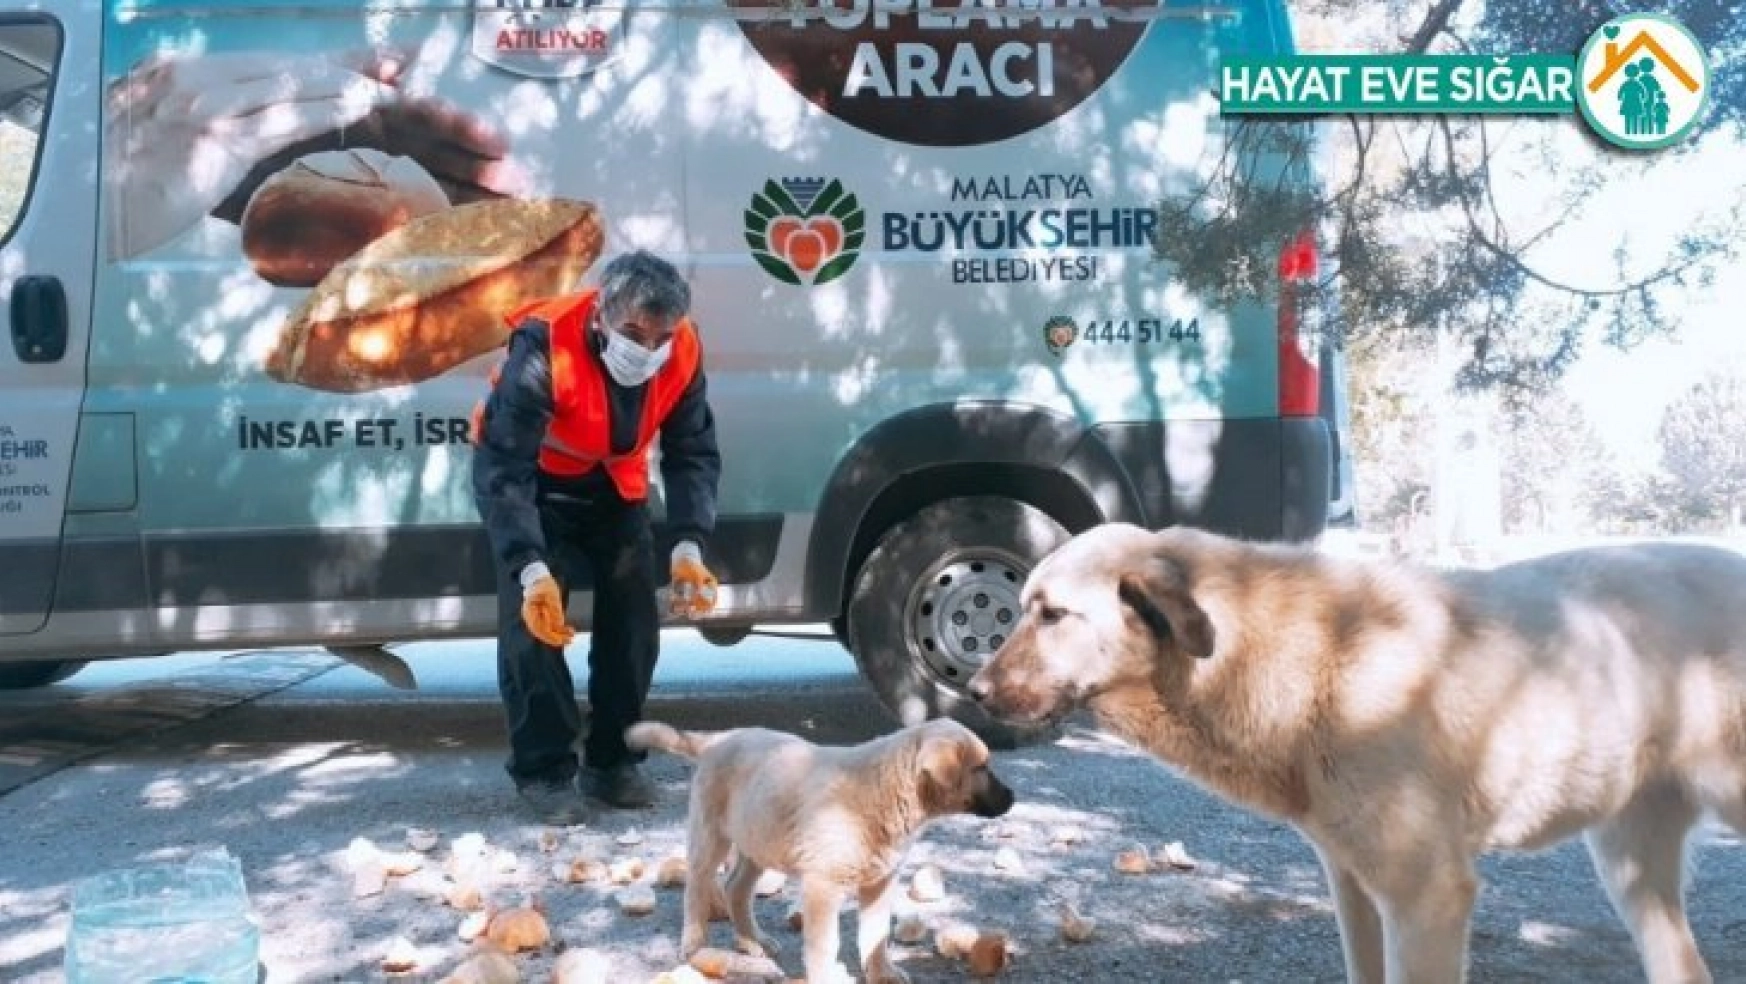 Malatya'da parklara sokak hayvanları için ekmek bırakılıyor